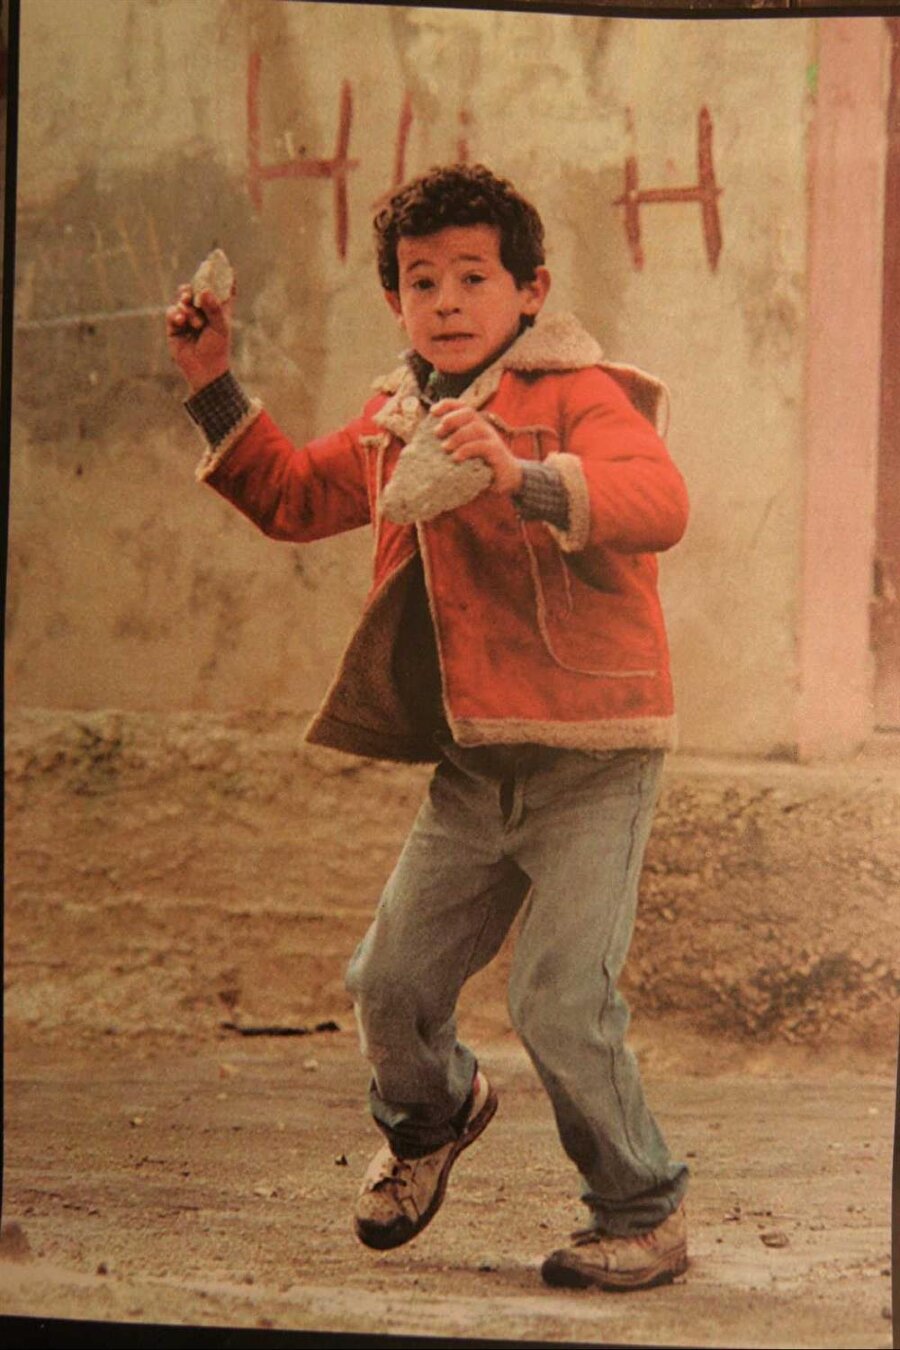 Remzi Ebu Rıdvan'nın ikonik fotoğrafı, "Taşın çocuğu (Child of the Stone)" olarak biliniyor.